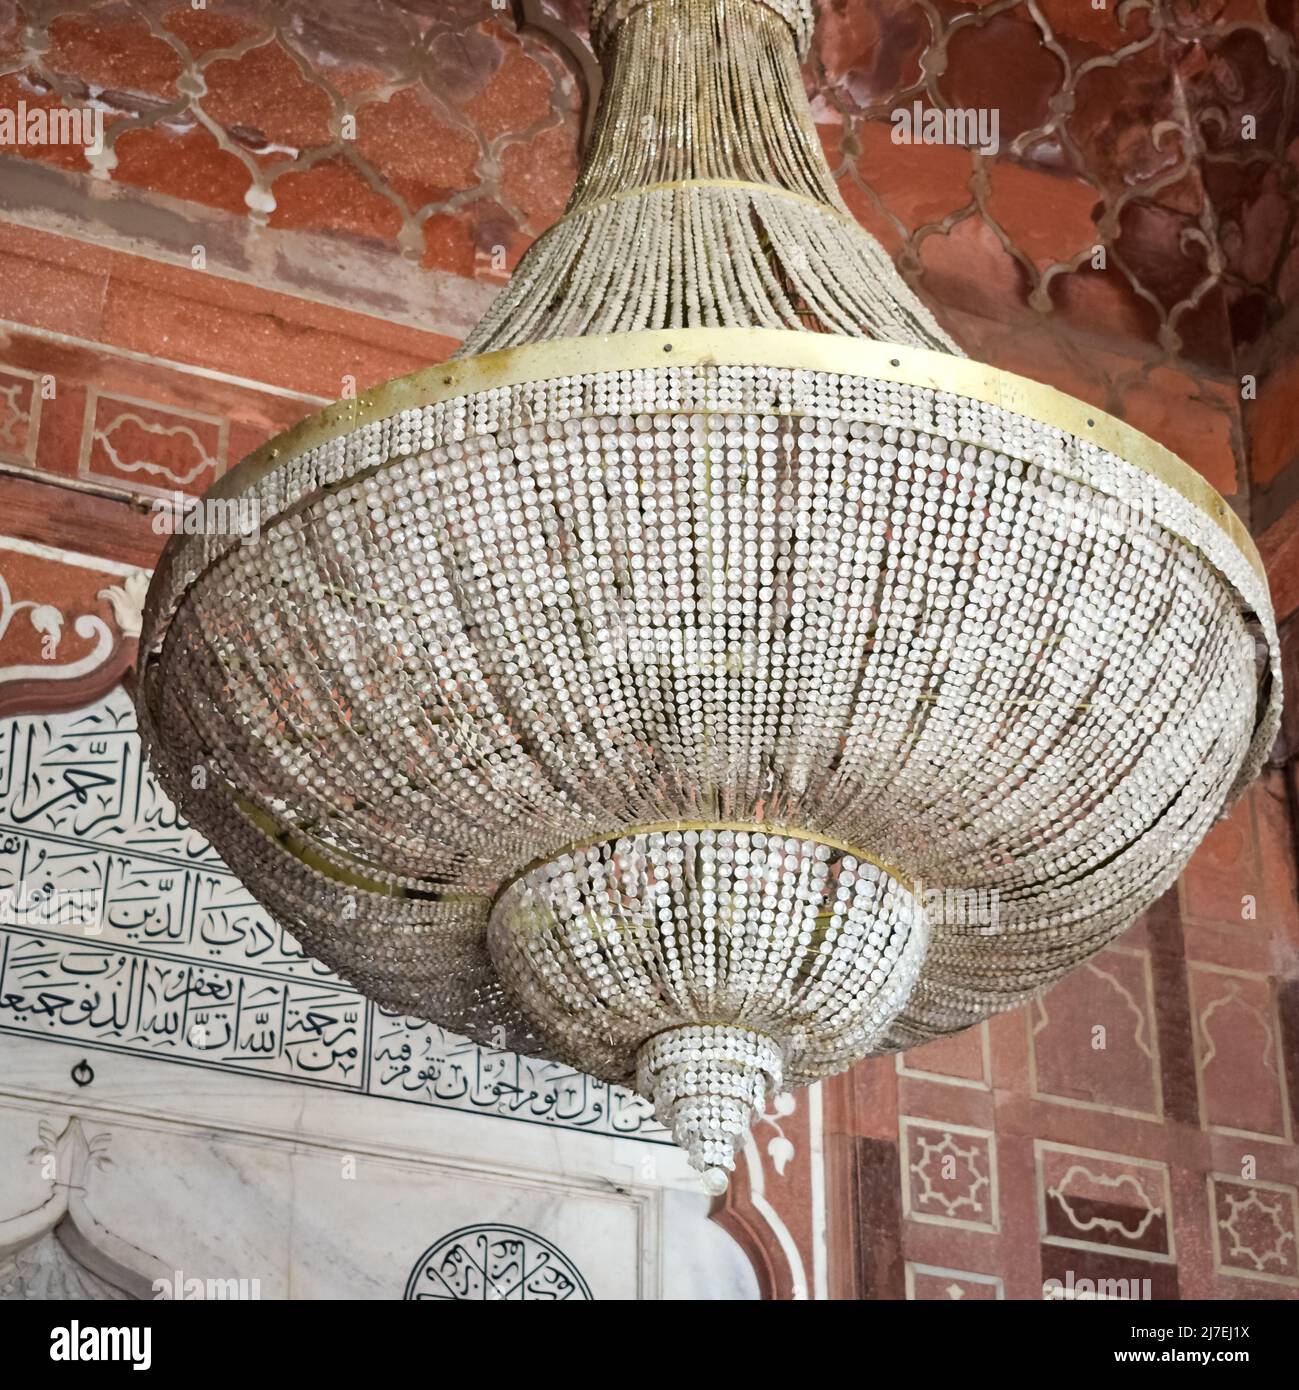 Dettagli architettonici della Moschea di Jama Masjid, Vecchia Delhi, India, la spettacolare architettura della Grande Moschea del Venerdì (Jama Masjid) a Delhi 6 durante Foto Stock